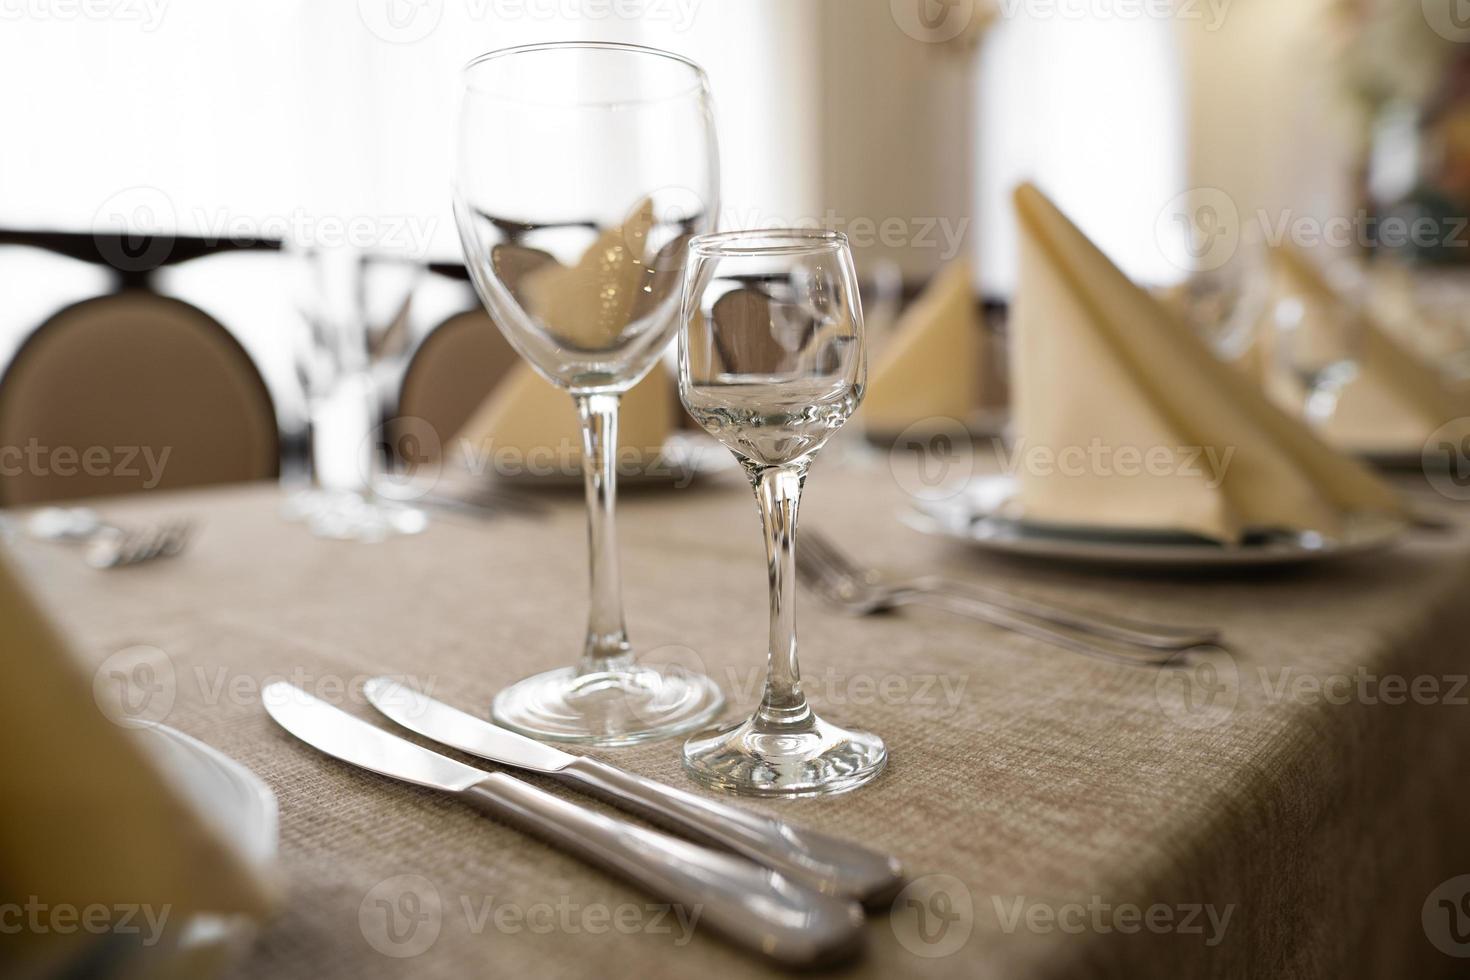 en la mesa festiva se sirven copas vacías y otros cubiertos. foto